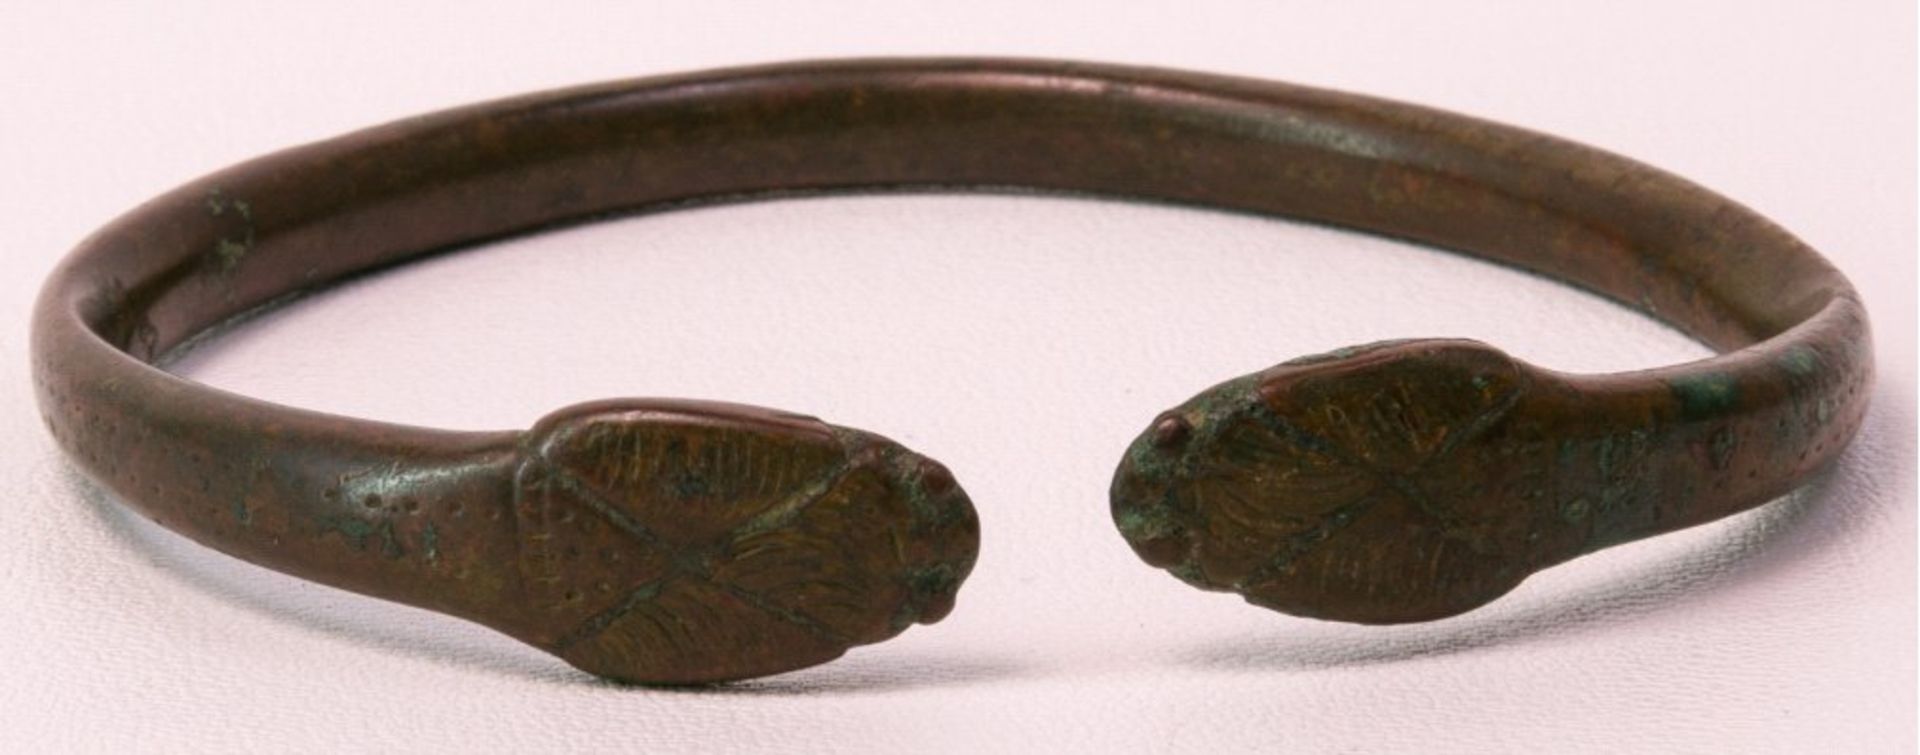 Armreif, Römisch/Keltisch ca. 300 v. Chr.Bronze, verziert mit 2 Kobraköpfen, schöne Patina, - Image 2 of 2